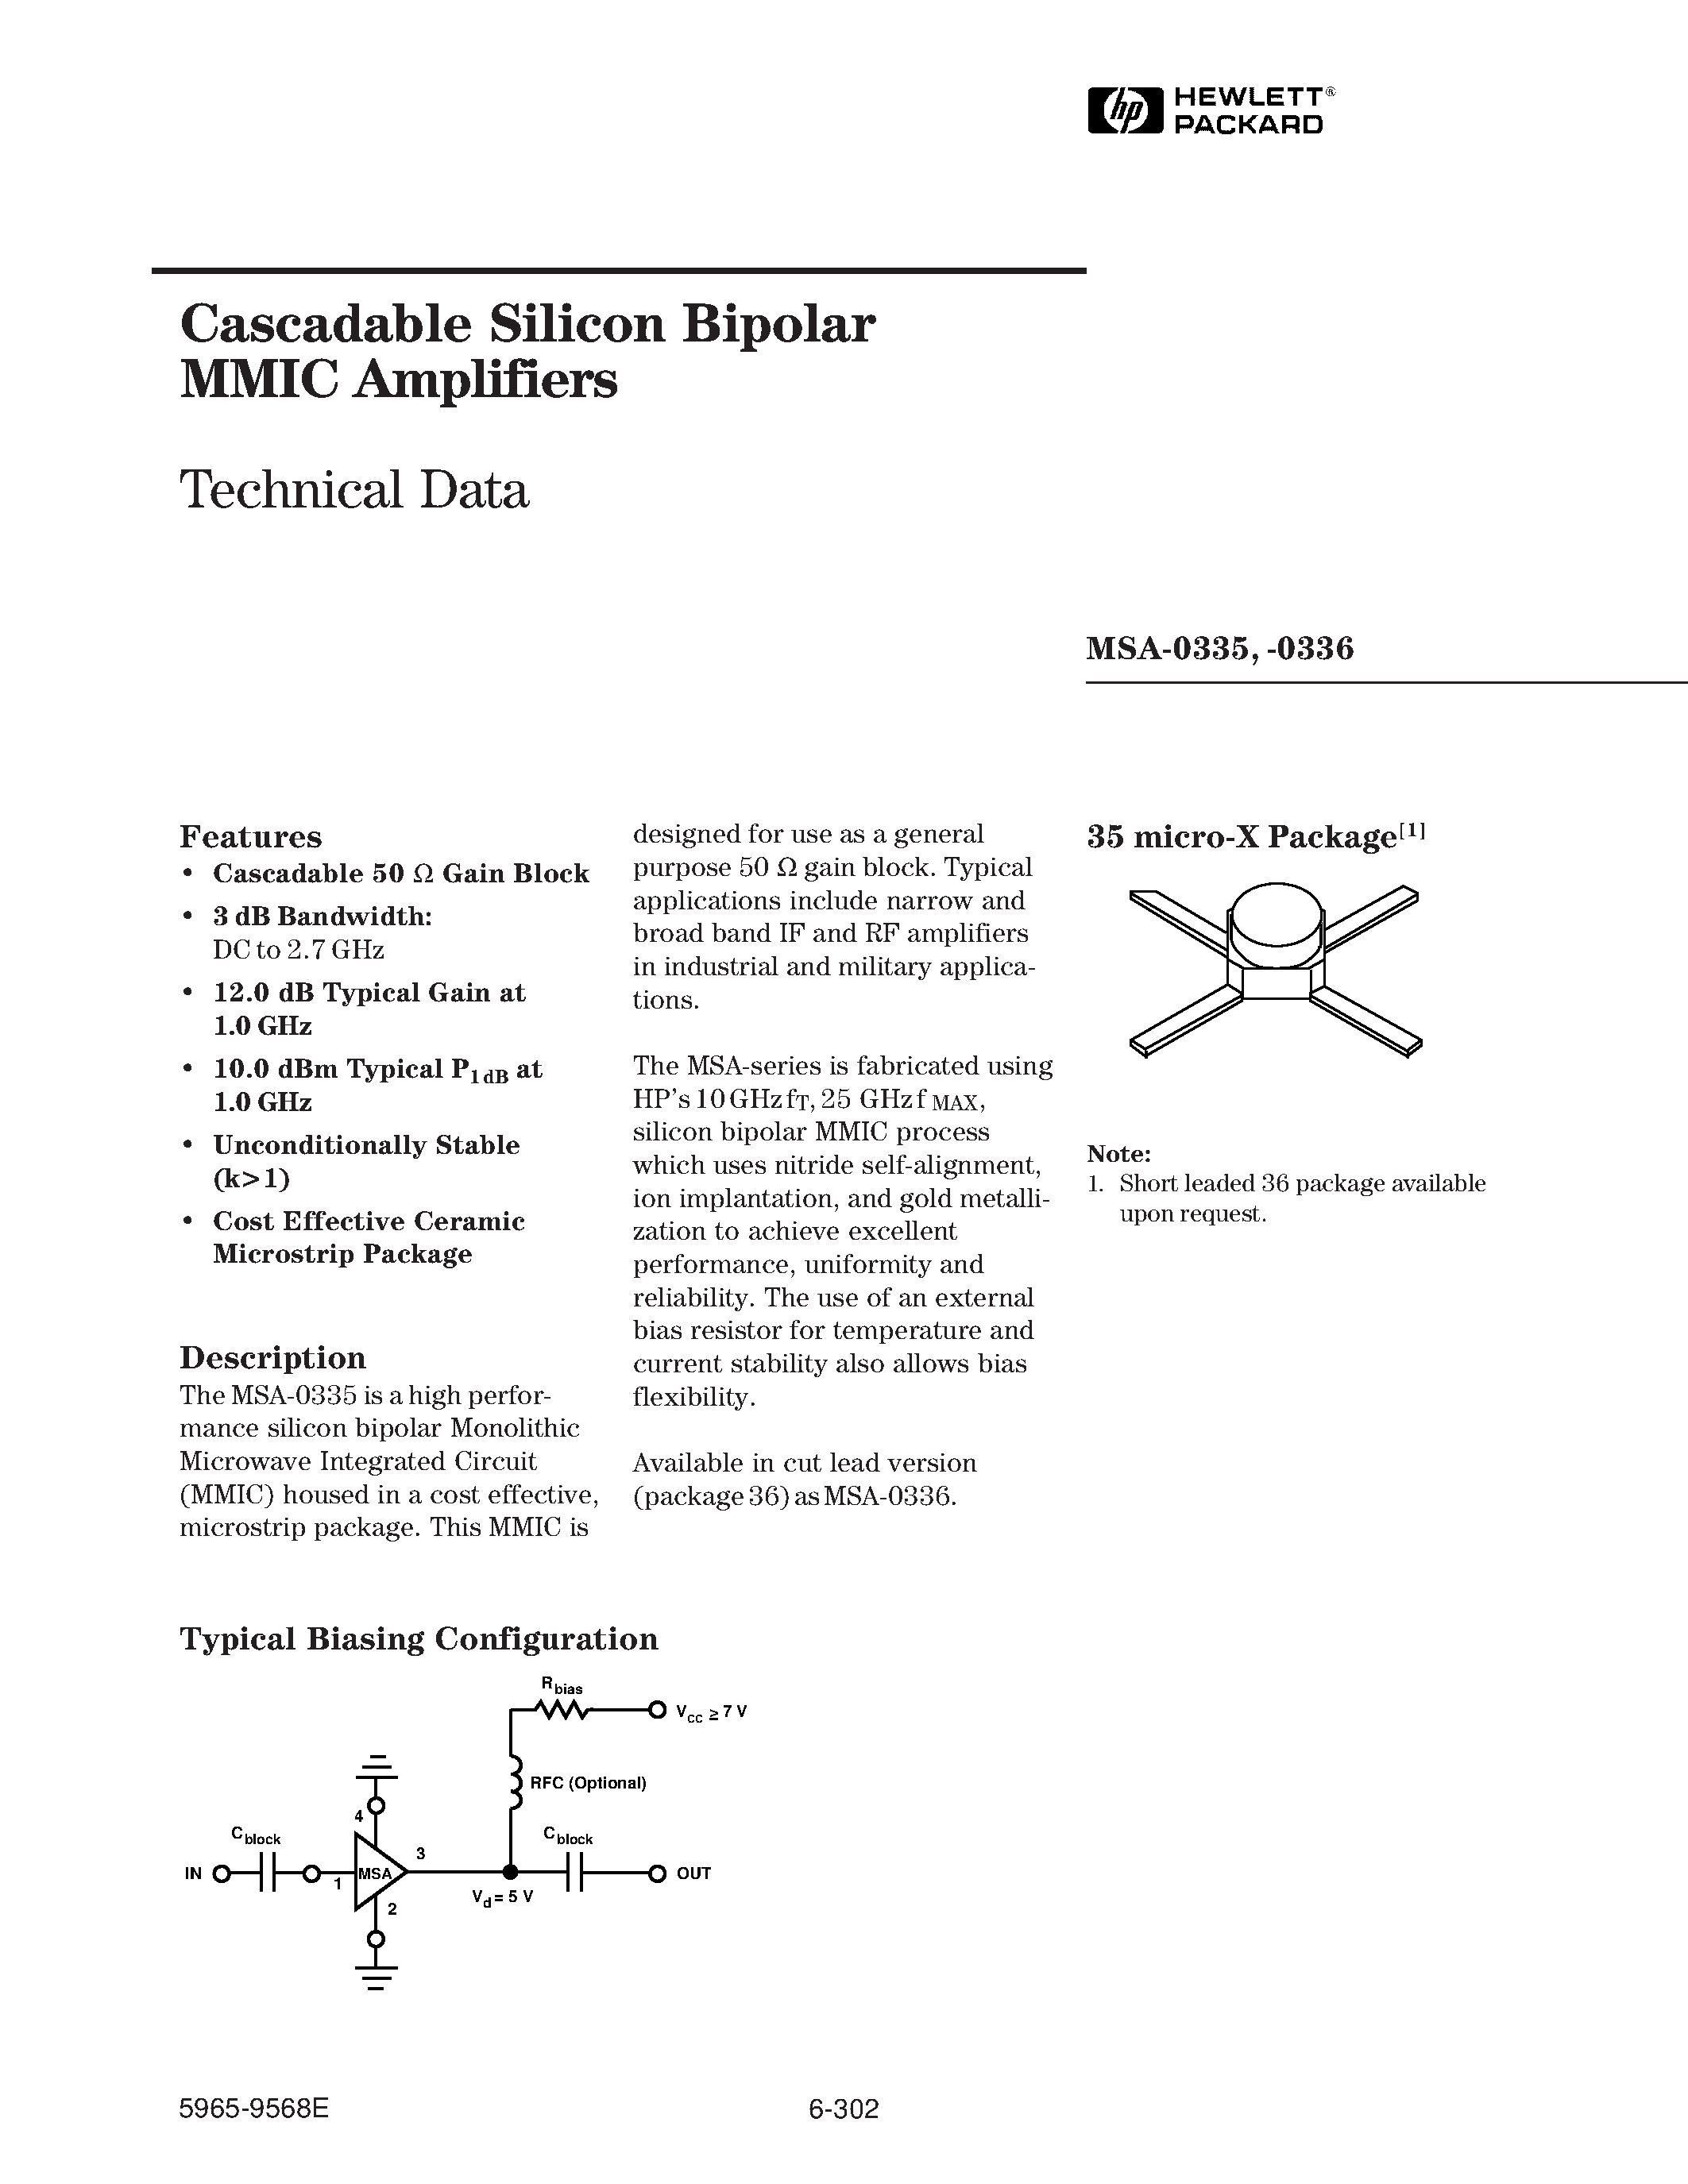 Даташит MSA-0335 - (MSA-0335 / MSA-0336) Cascadable Silicon Bipolar MMIC Amplifier страница 1